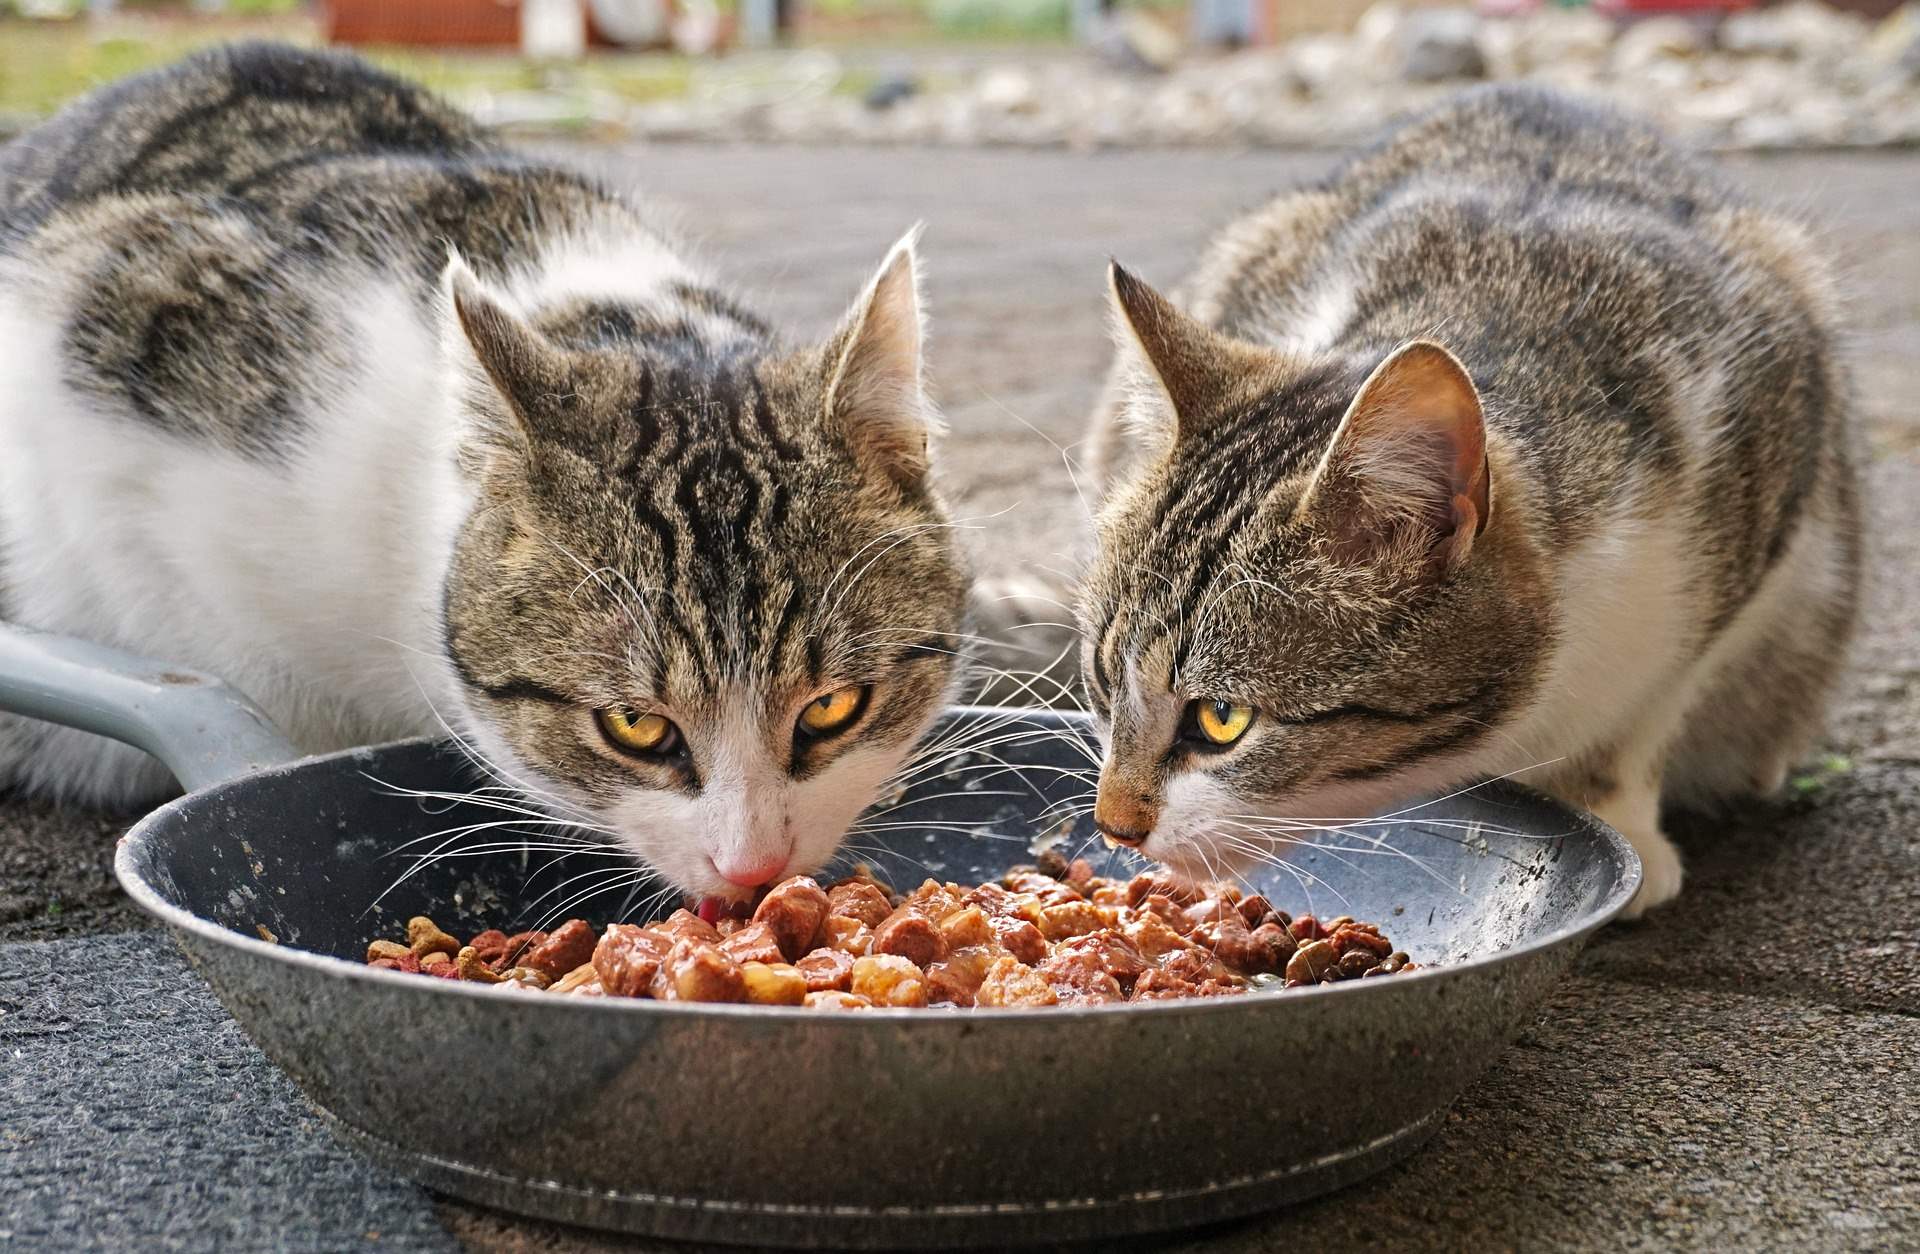 מזון וציוד לחתולים